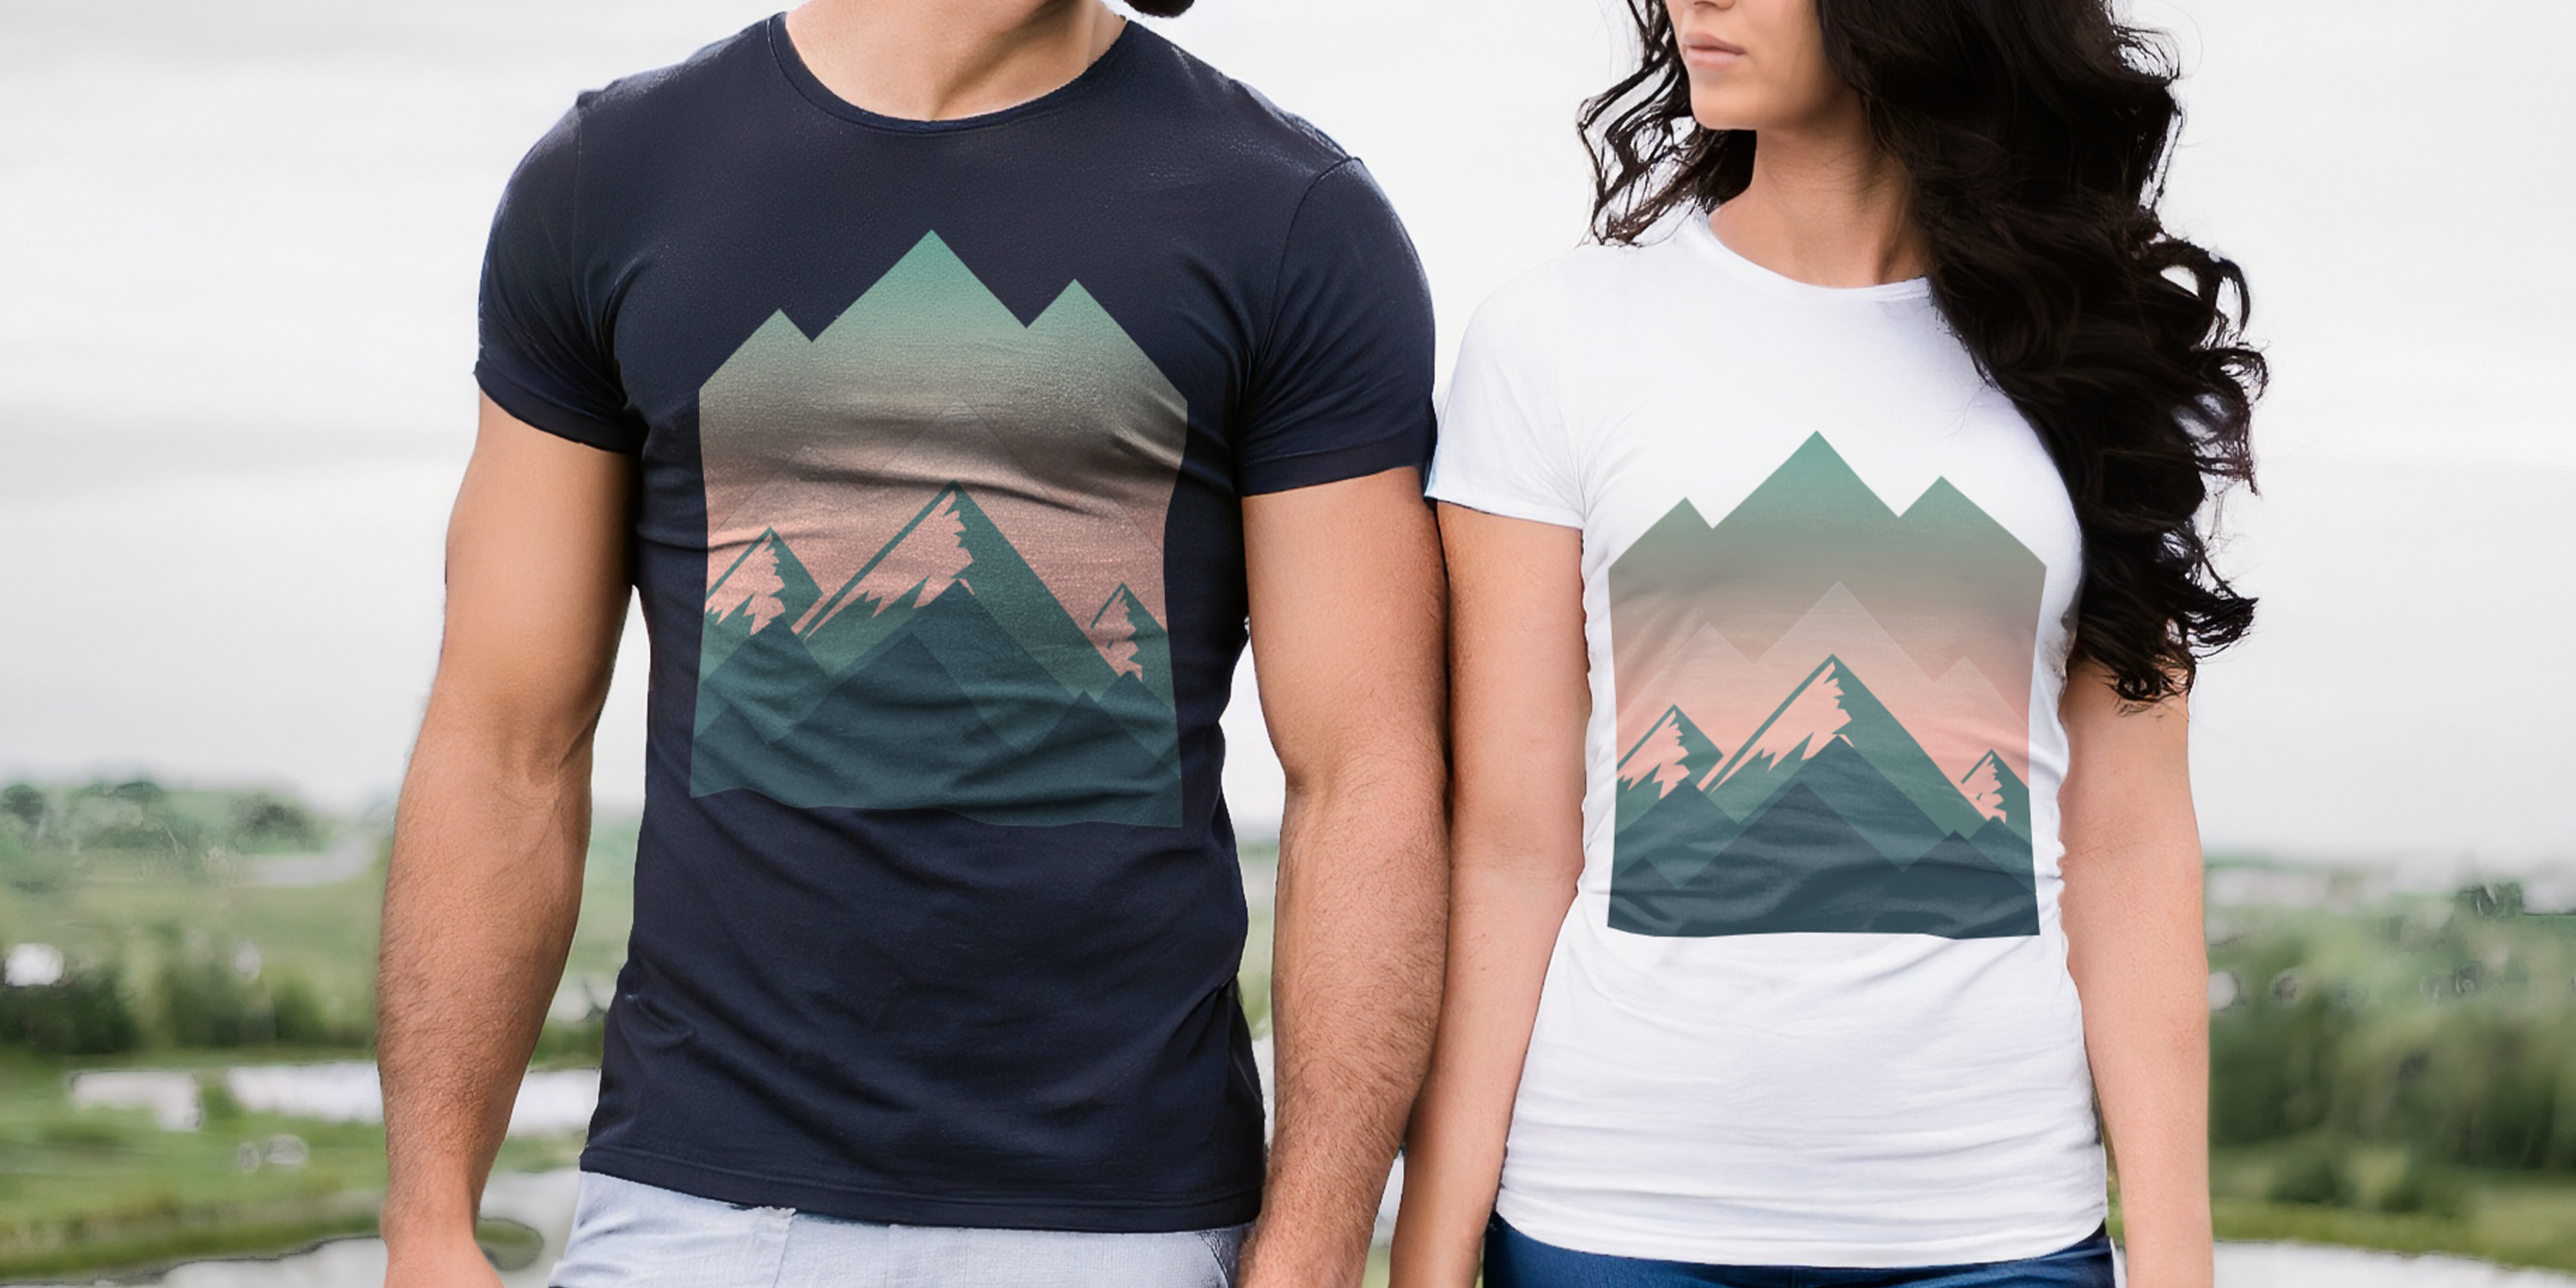 Zwei Personen tragen kurzarm organic T-Shirts mit dem gleichen Design